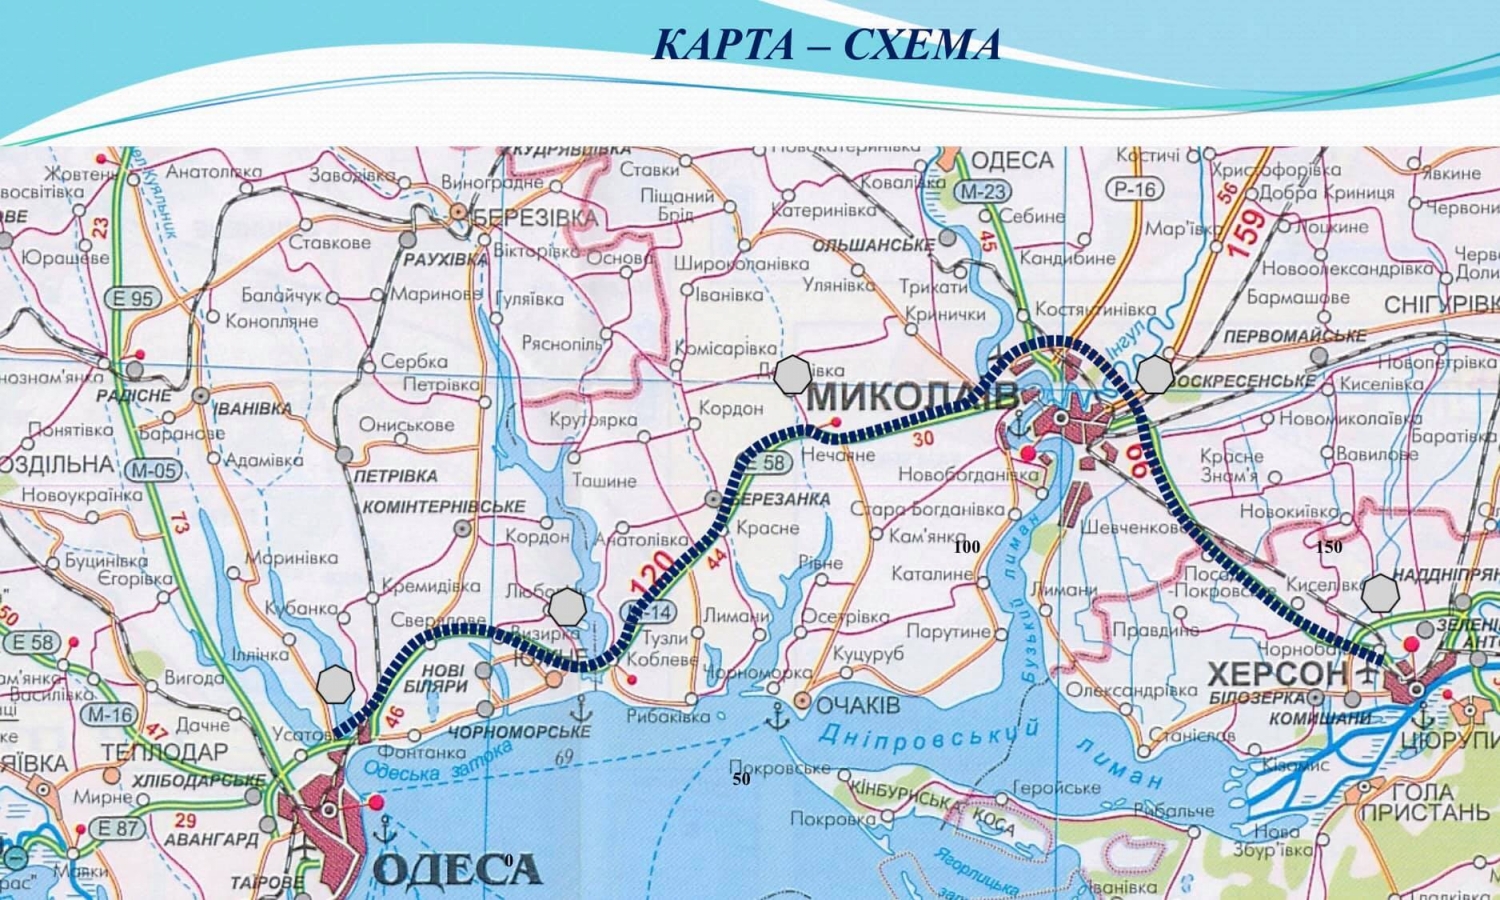 Город Херсон, Николаев, Одесса Украина на карте